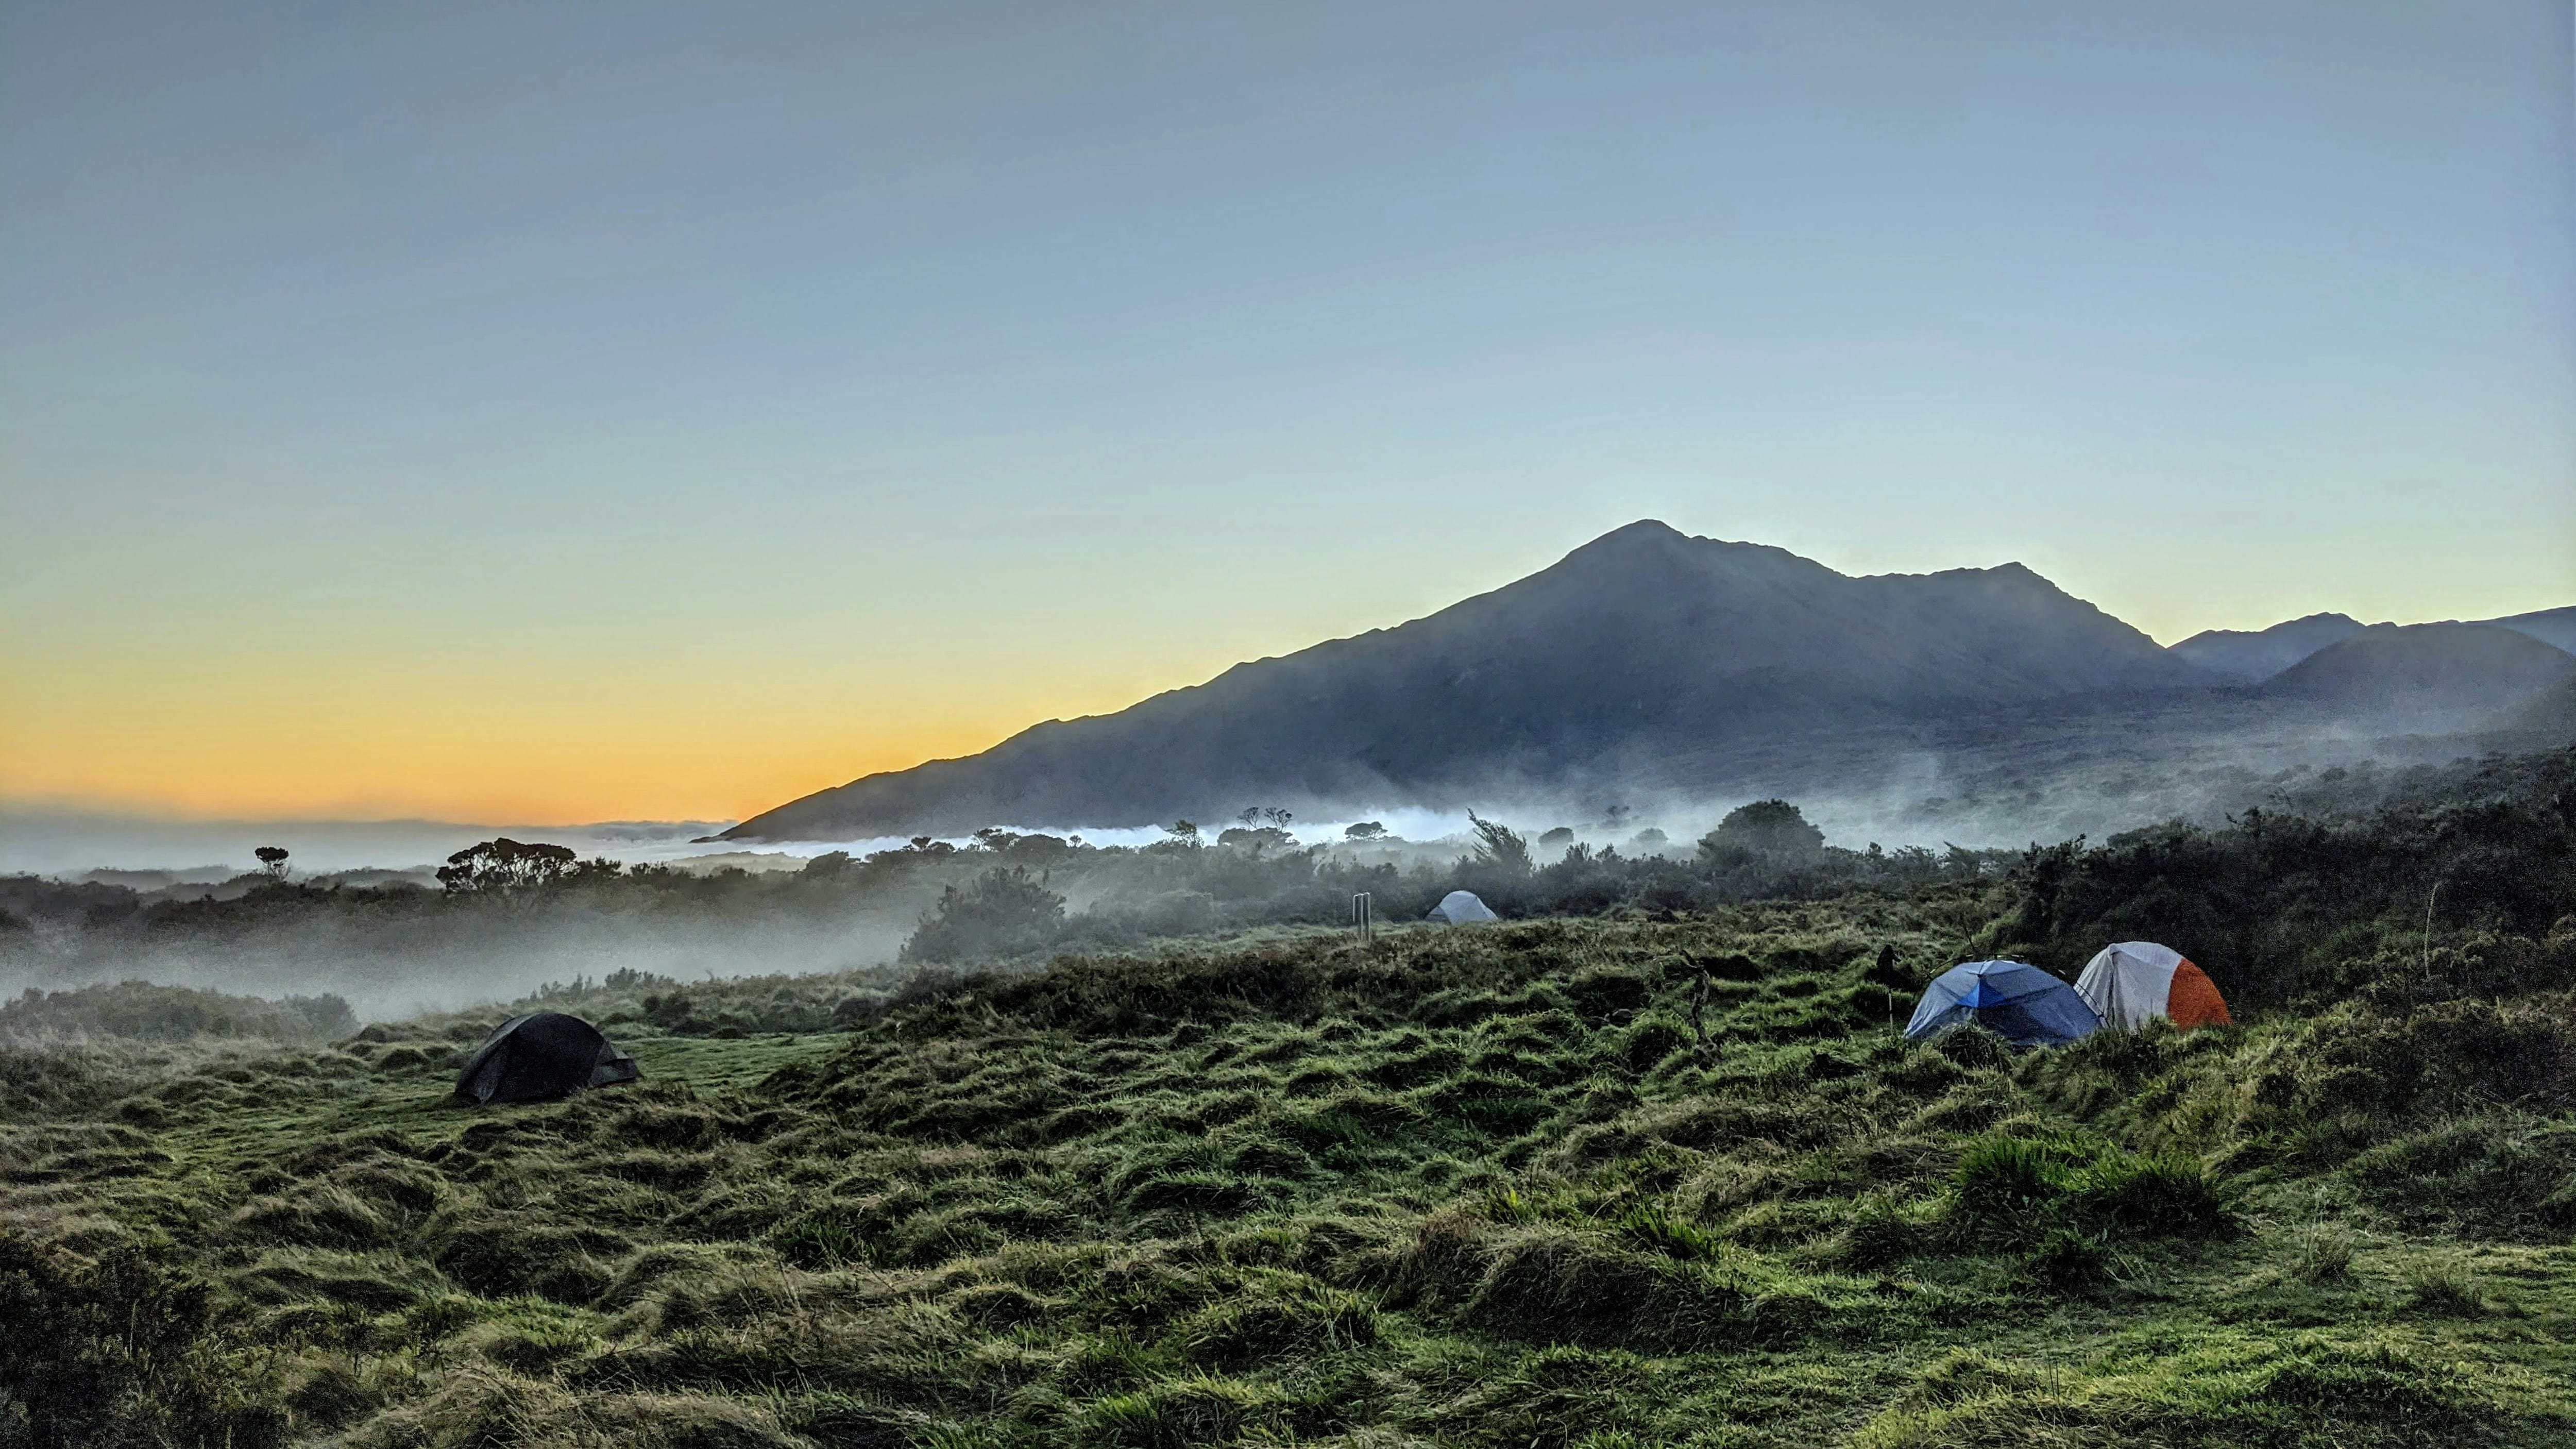 Haleakala Mountain